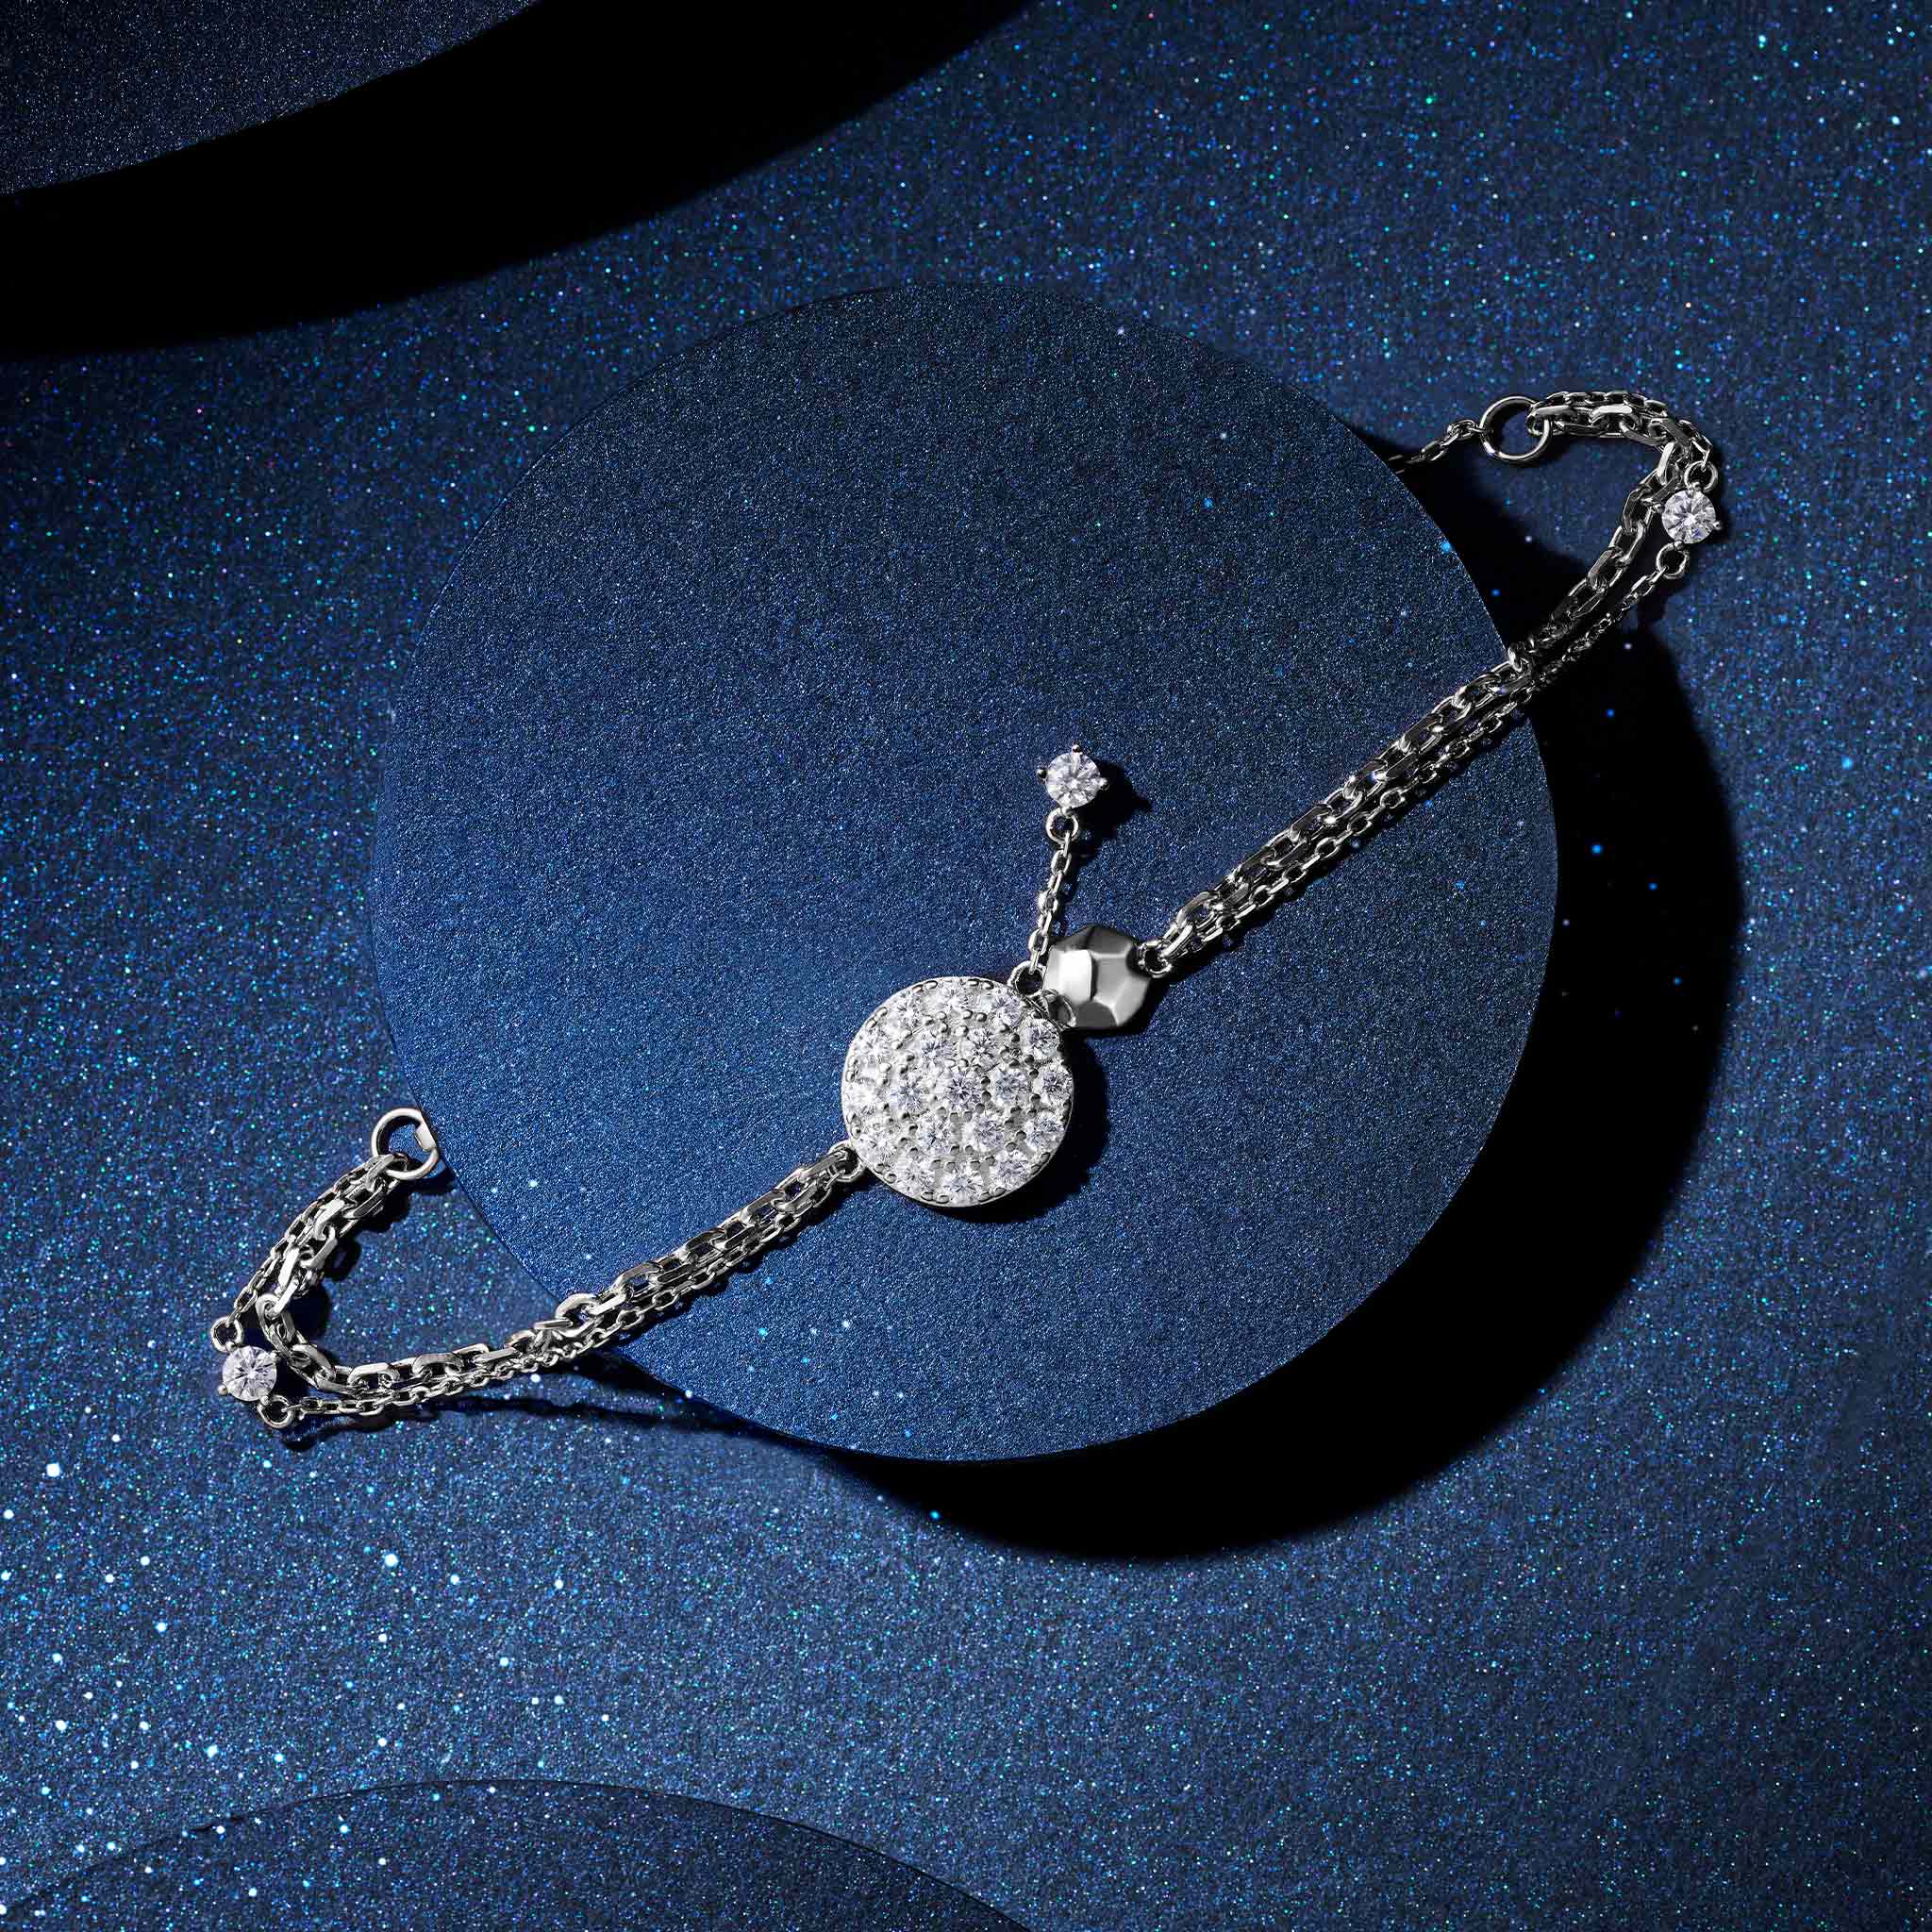 Women's Sterling Silver Bracelet of Starry Sky Charm Bracelets WAA FASHION GROUP 